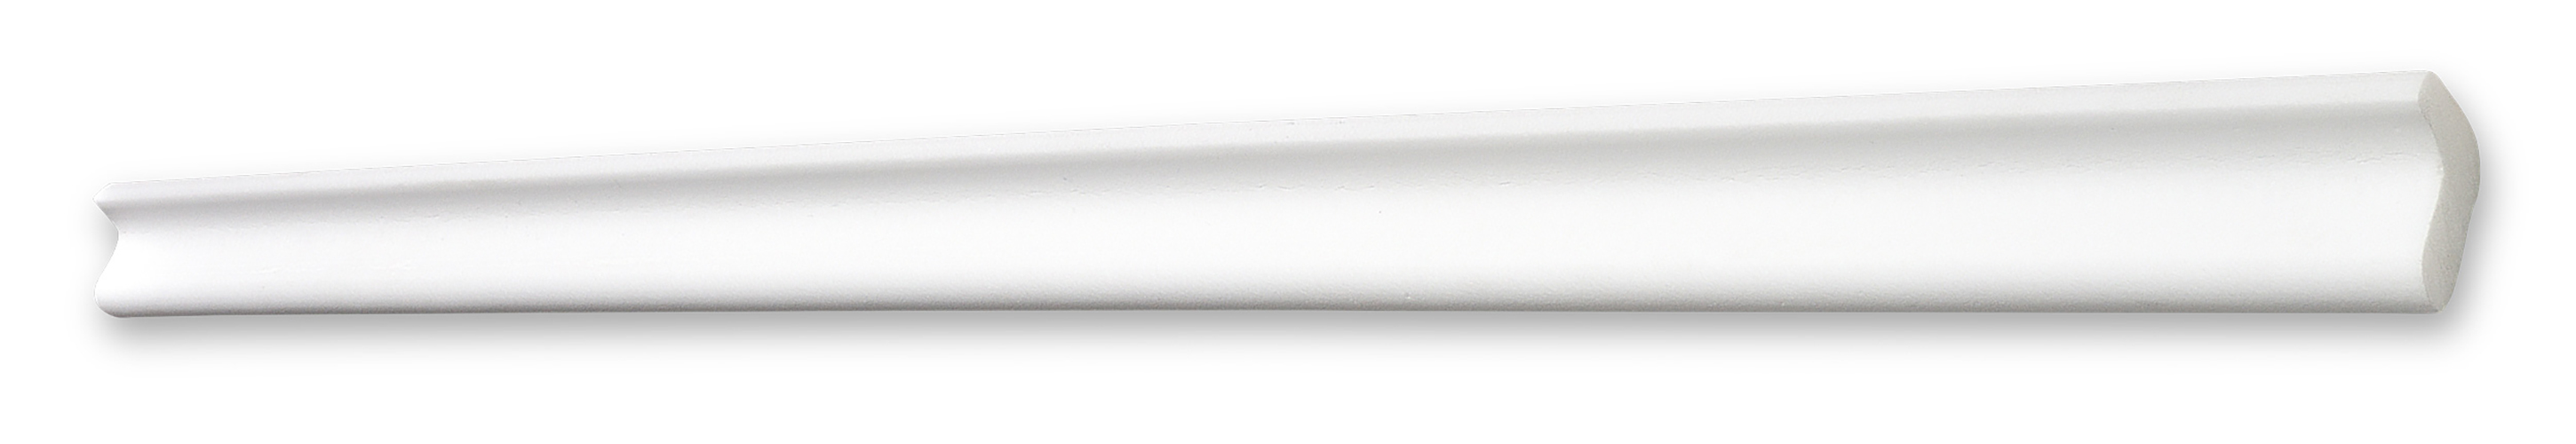 Decosa Zierprofil L25 (Tanja), weiß, 20 x 25 mm, Länge: 2 m